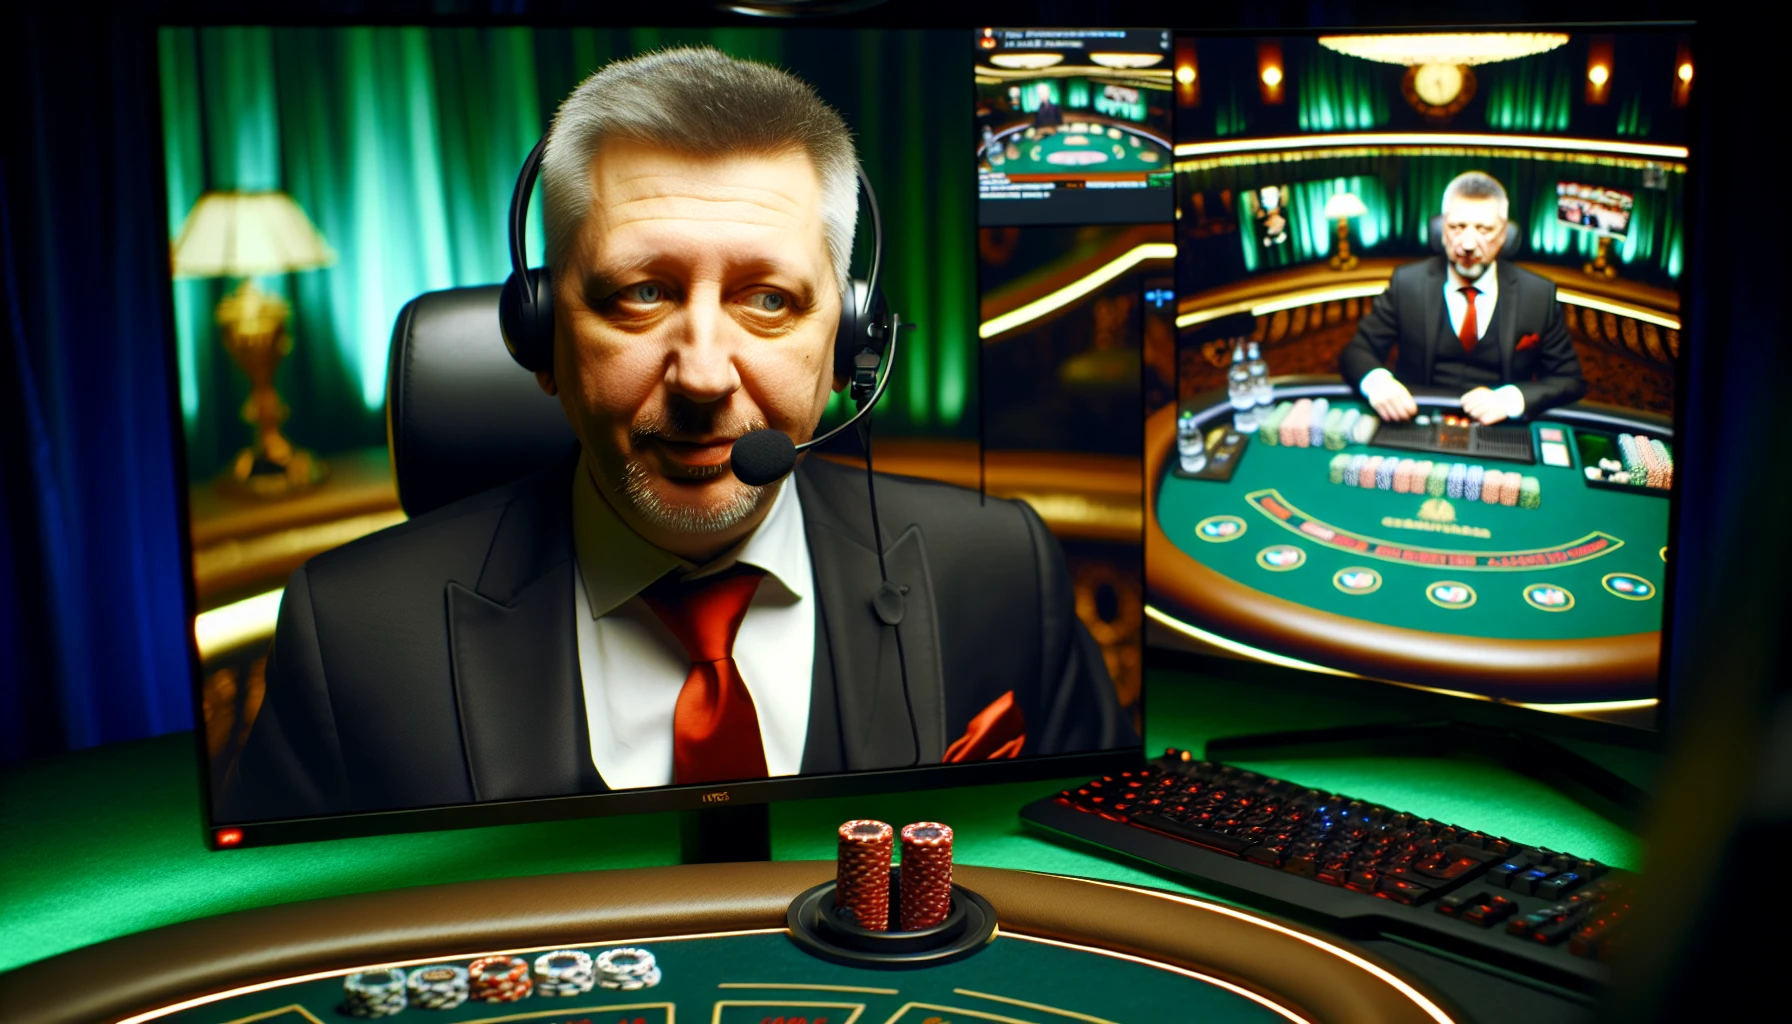 Online casino dealer hosting live game